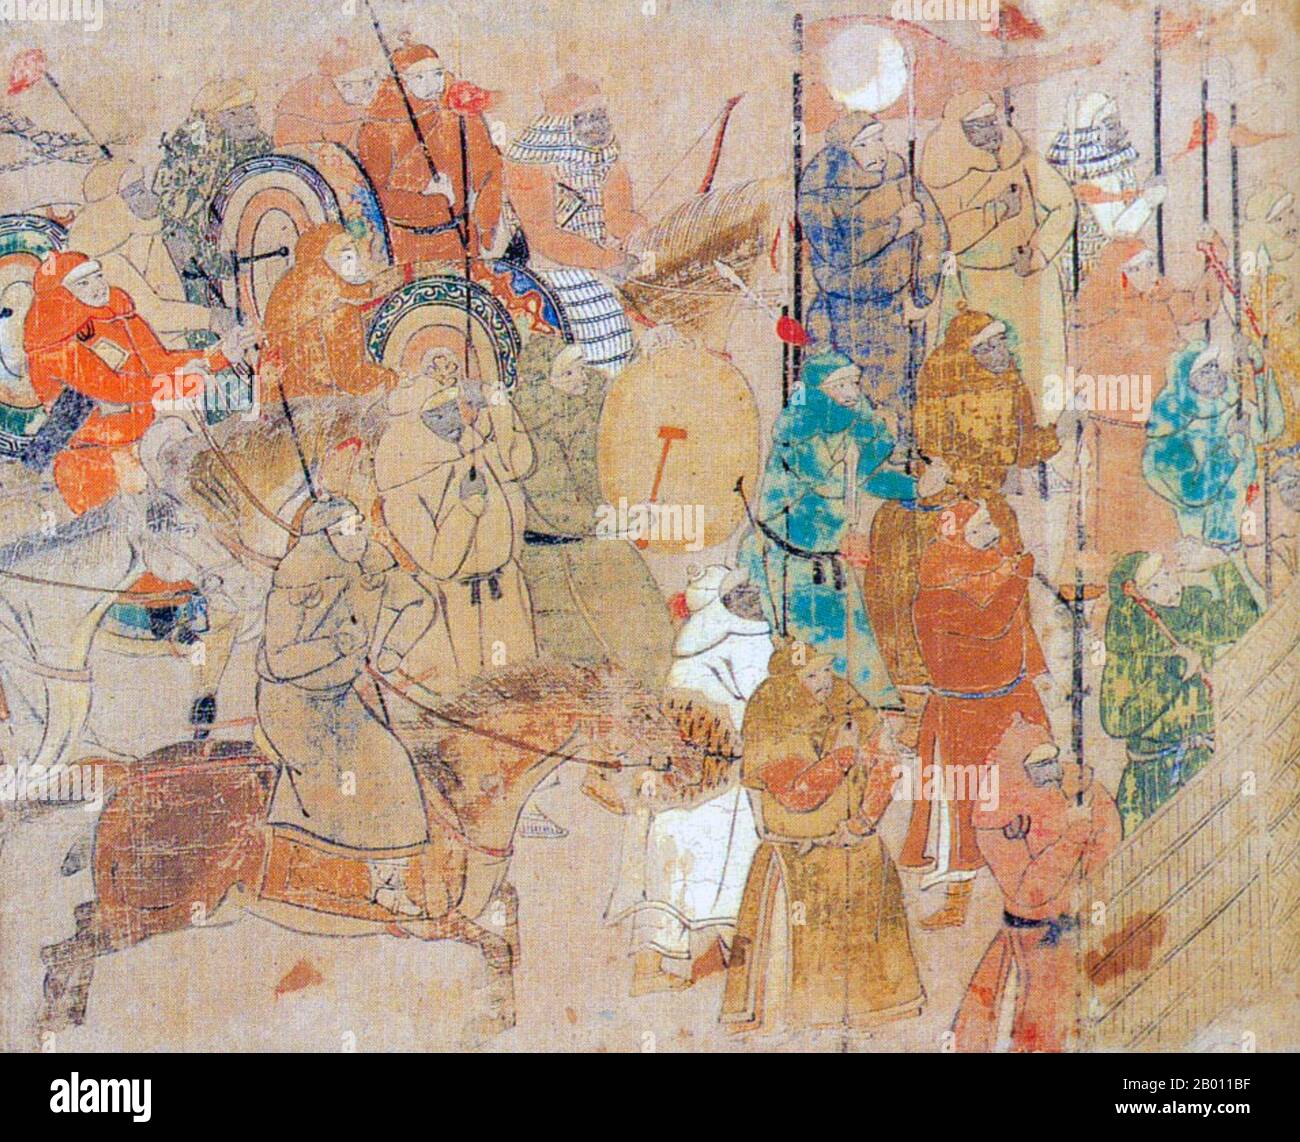 Giappone: Le truppe Yuan massaggiano per l'invasione mongolo del Giappone. Pittura dal handscroll illustrato 'Moko Shurai Ekotoba' ('conto illuminato dell'invasione mongolo'), c. 1293. Le invasioni mongolo del Giappone del 1274 e del 1281 furono le principali invasioni militari intraprese da Kublai Khan per conquistare le isole giapponesi dopo la sottomissione della Corea. Nonostante il loro ultimo fallimento, i tentativi di invasione sono di importanza storica, perché hanno fissato un limite all'espansione Mongol, e si classificano come eventi che definiscono la nazione nella storia giapponese. Foto Stock